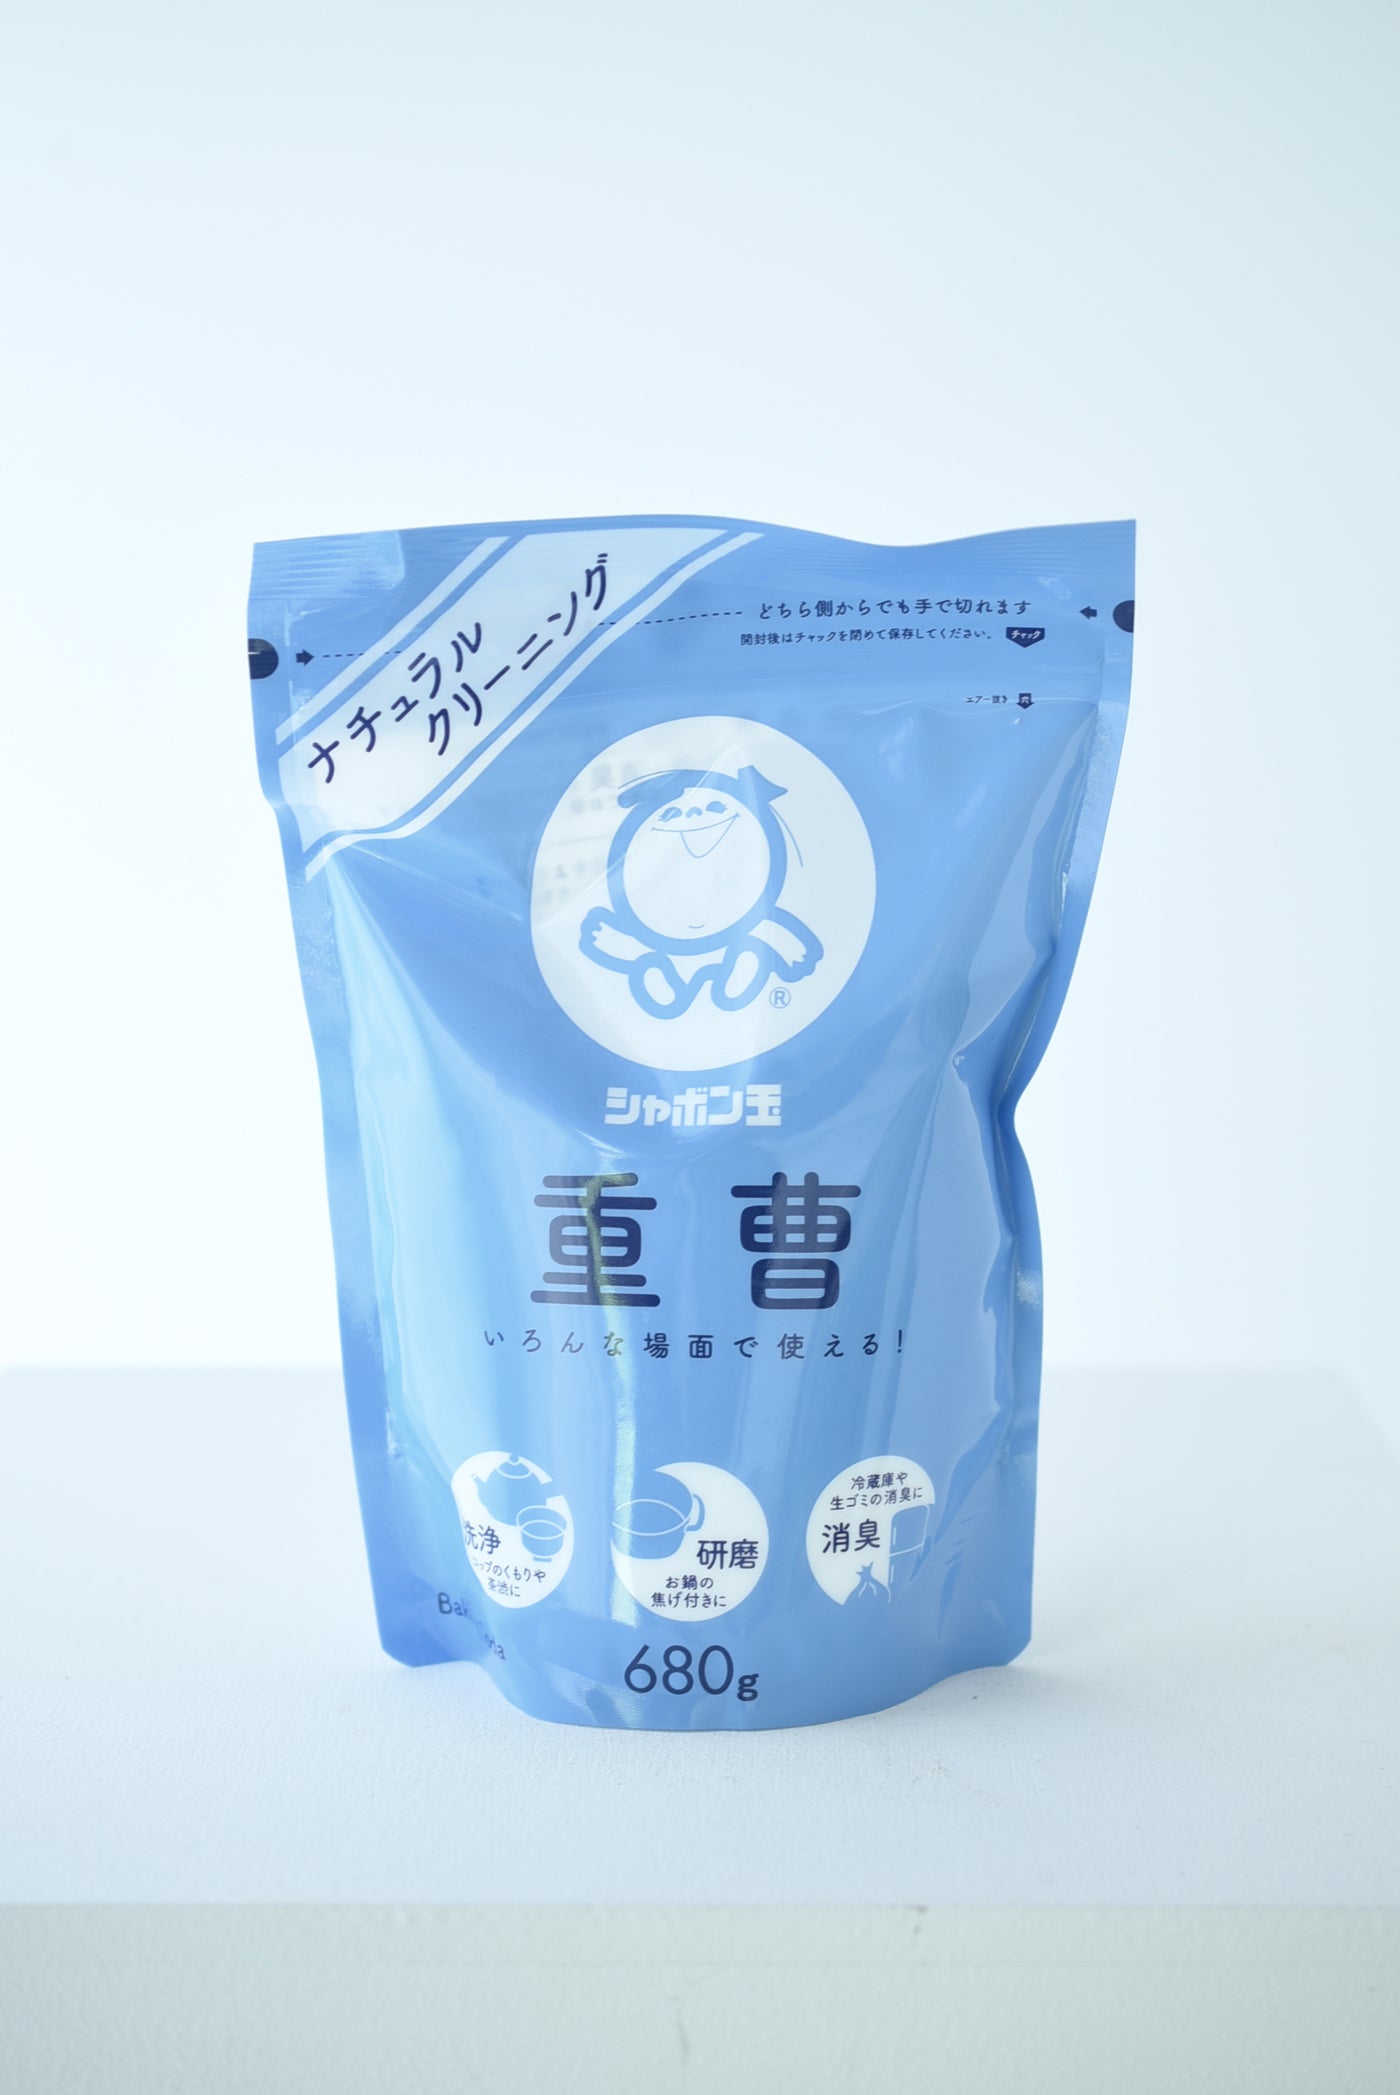 シャボン玉 重曹 680g (3個) - 洗剤